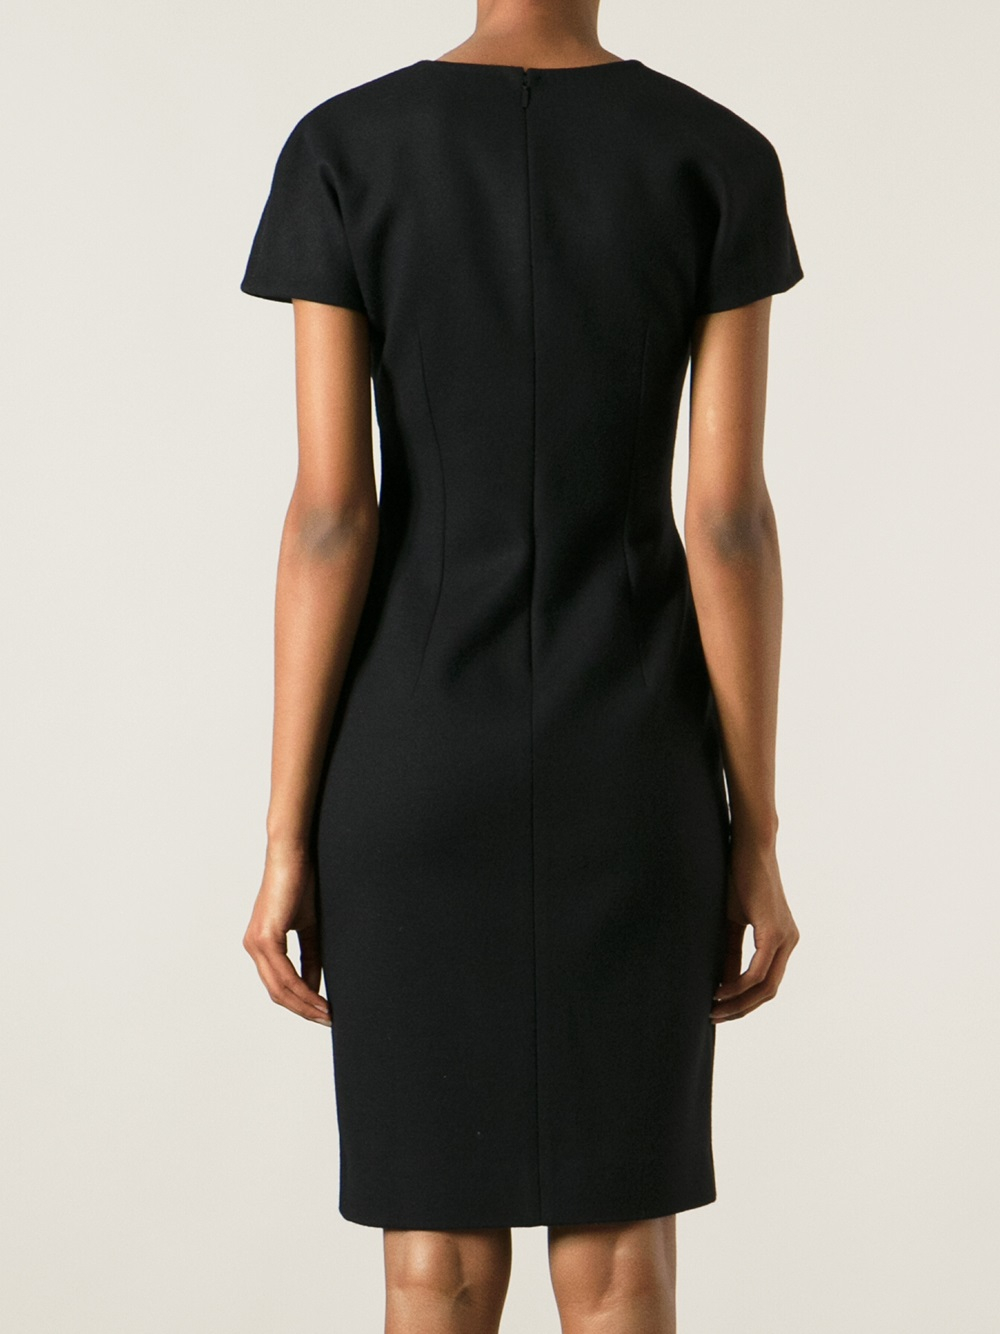 Fendi Pleated Wrap Dress in Black - Lyst